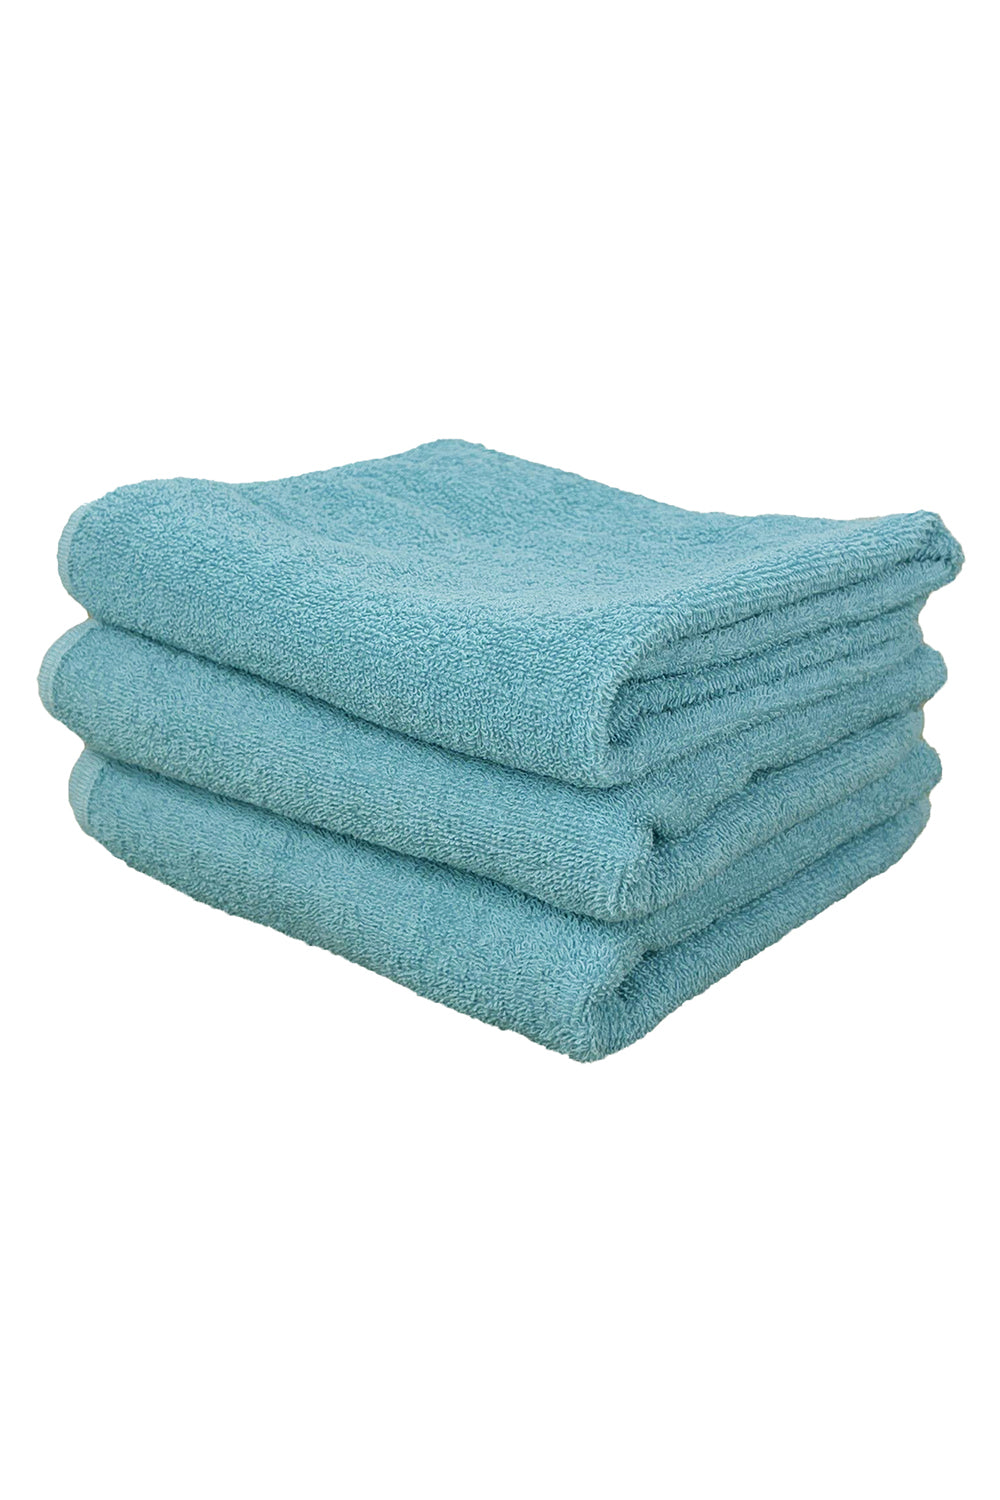 Jungmaven Hand Towel  Jungmaven Hemp Goods